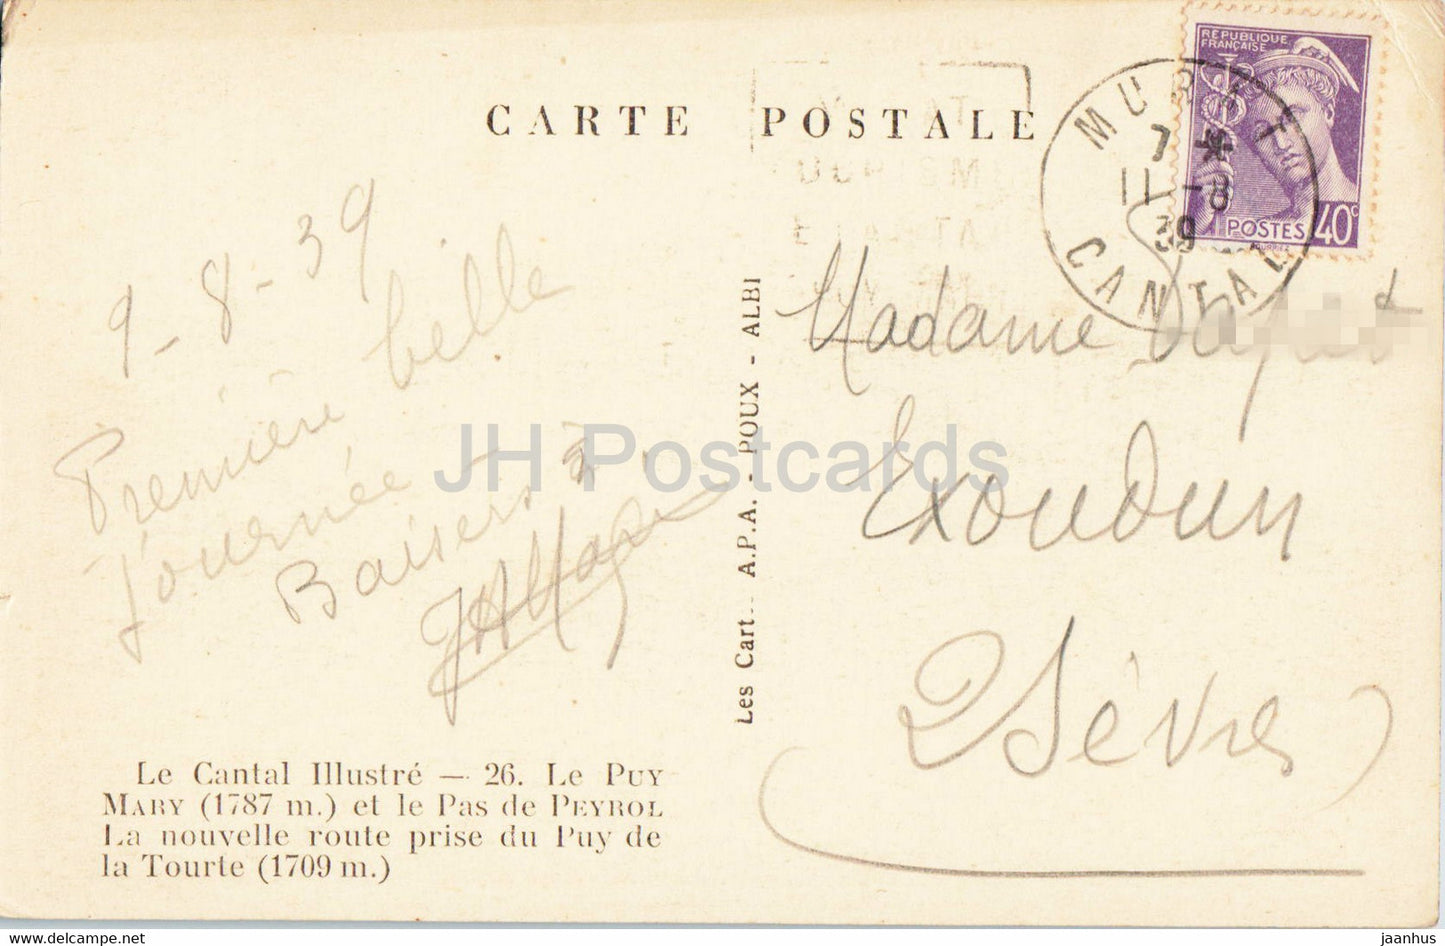 Le Cantal Illustre - Le Puy Mary et le Pas de Peyrol - alte Postkarte - 1939 - Frankreich - gebraucht